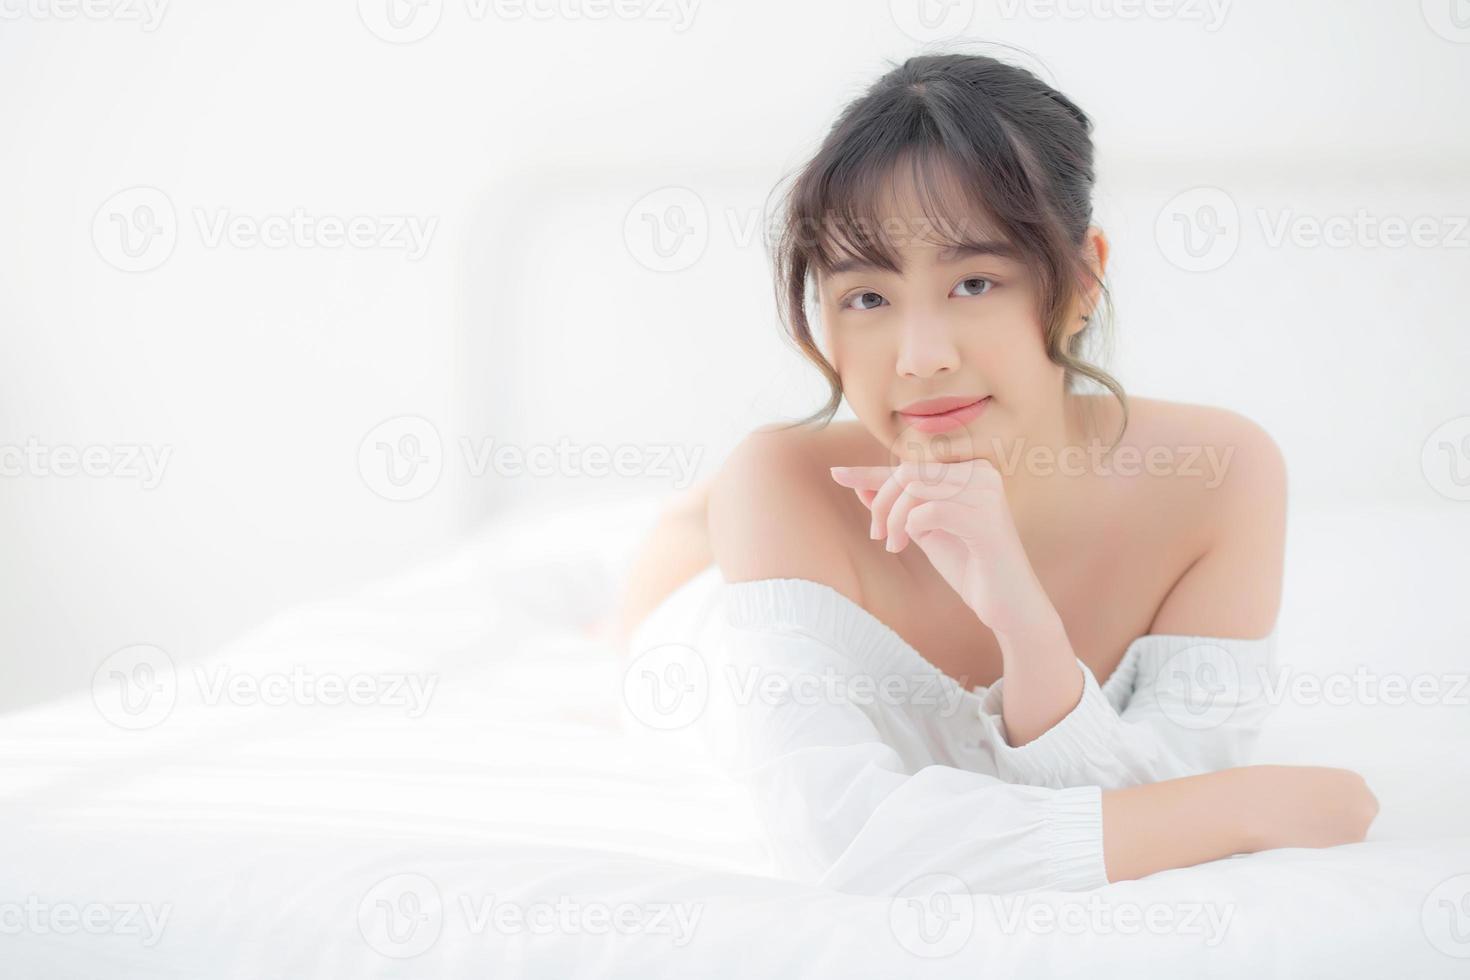 hermoso retrato joven mujer asiática acostada y sonriendo mientras se despierta con el amanecer en la mañana, belleza linda chica feliz y alegre descansando en la cama en el dormitorio, estilo de vida y concepto de relajación. foto